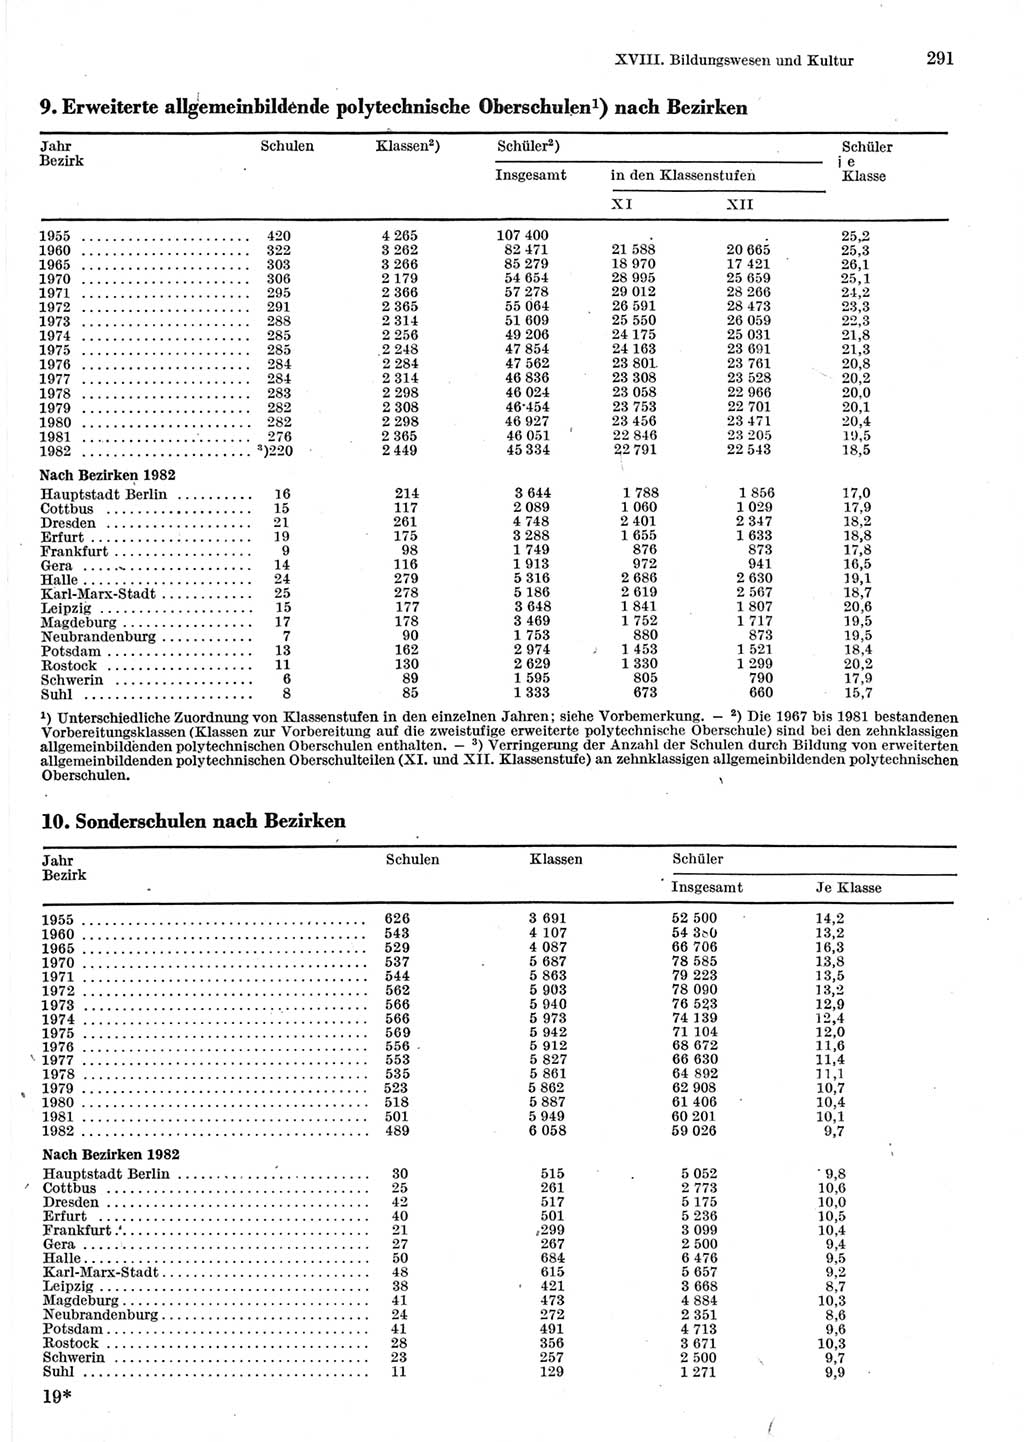 Statistisches Jahrbuch der Deutschen Demokratischen Republik (DDR) 1983, Seite 291 (Stat. Jb. DDR 1983, S. 291)